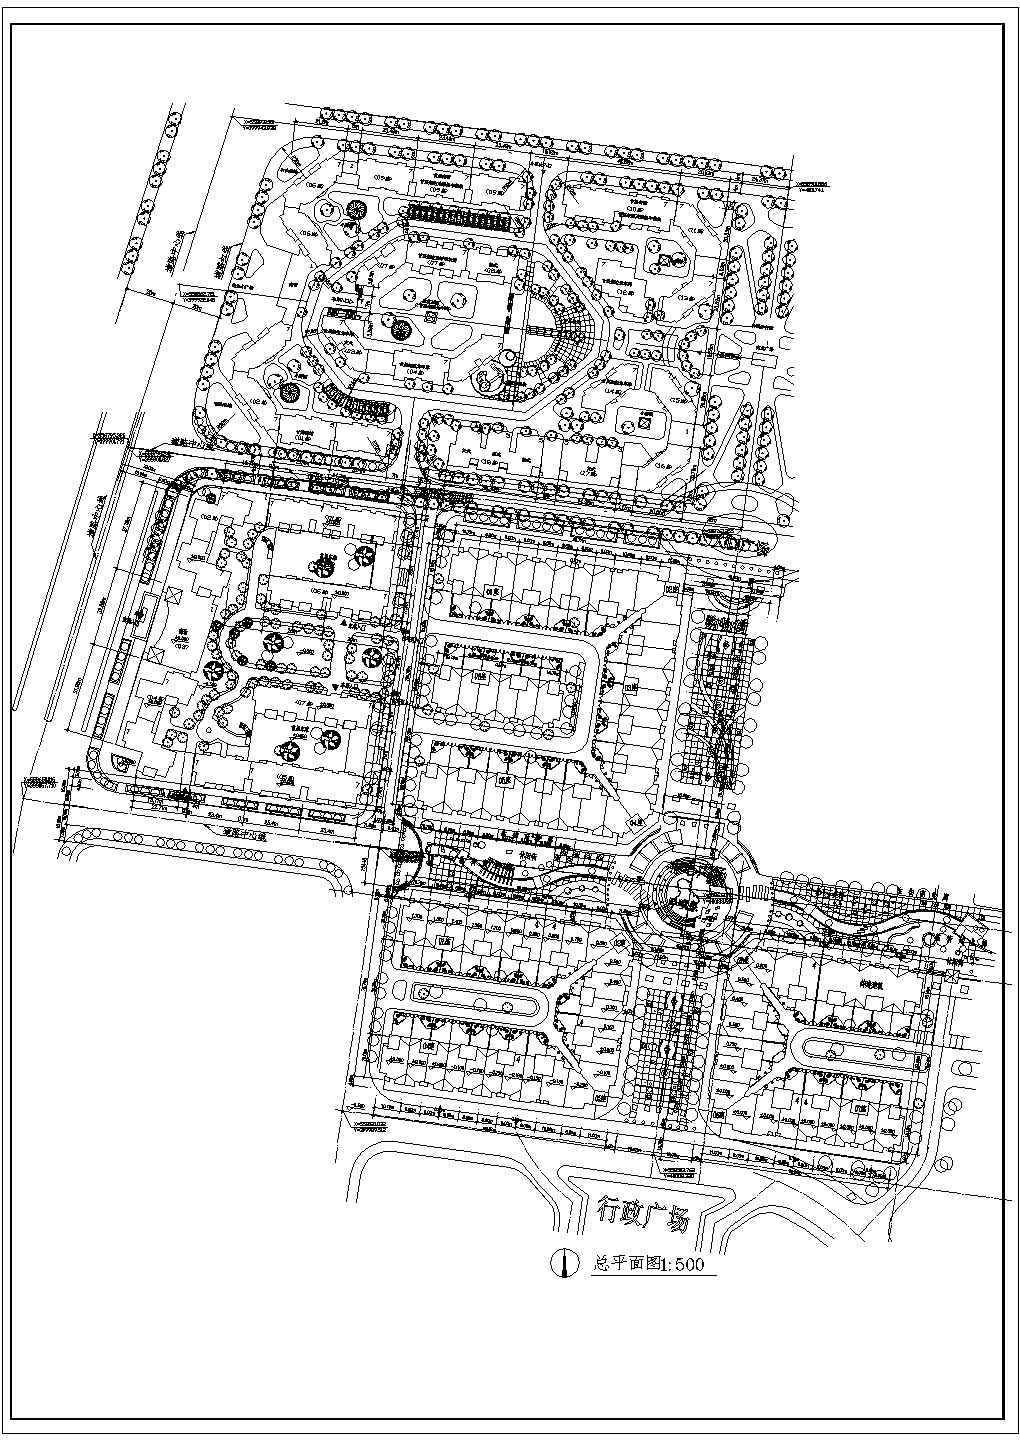 【长沙】某地商场住宅区建筑规划图